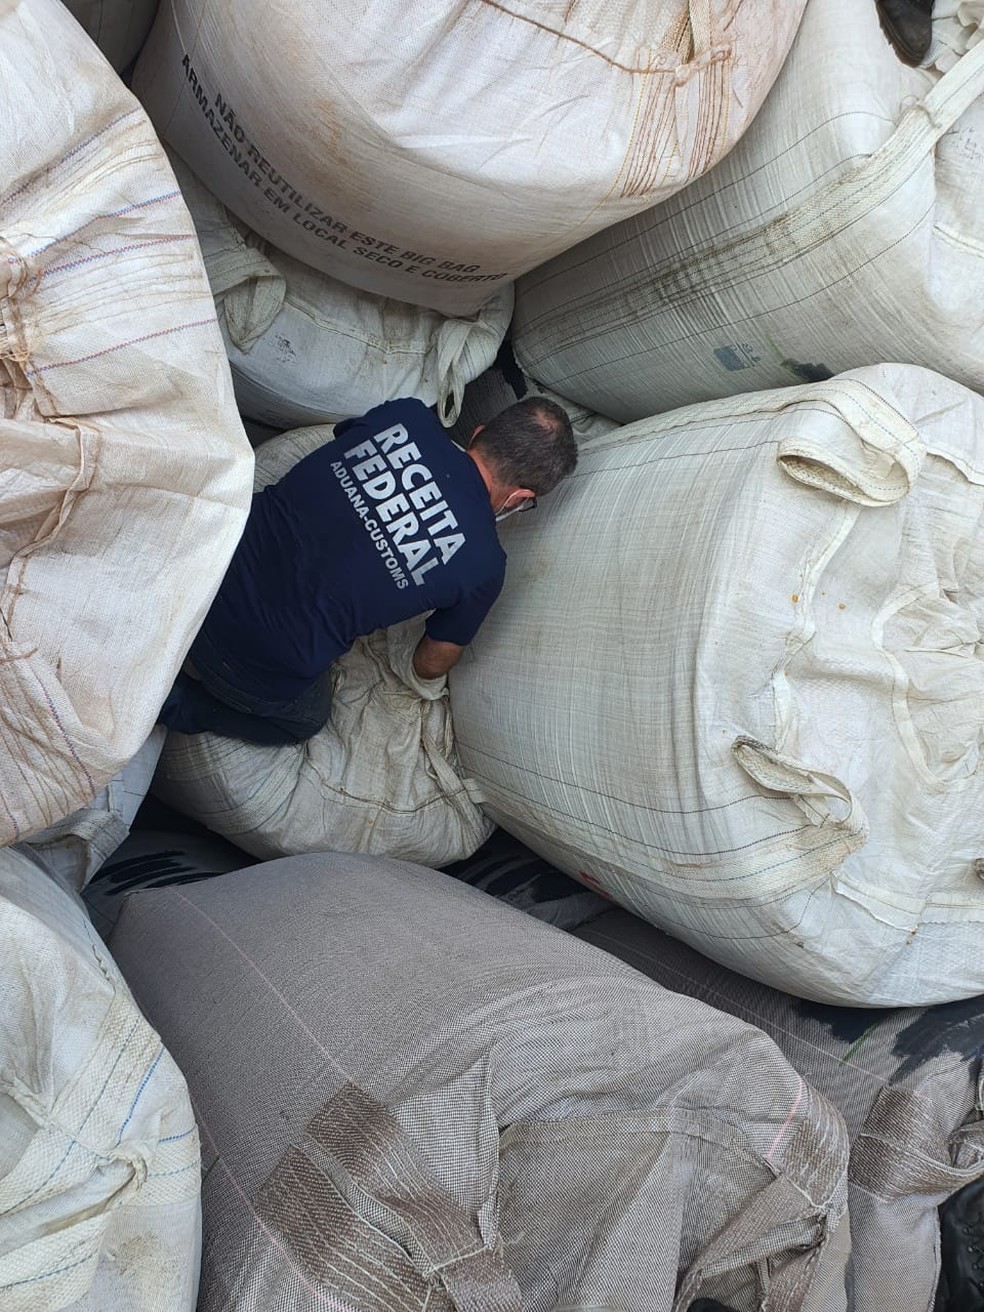 Operação apreende cocaína escondida em carga de milho em navio no porto de São Sebastião — Foto: Divulgação/ Receita Federal